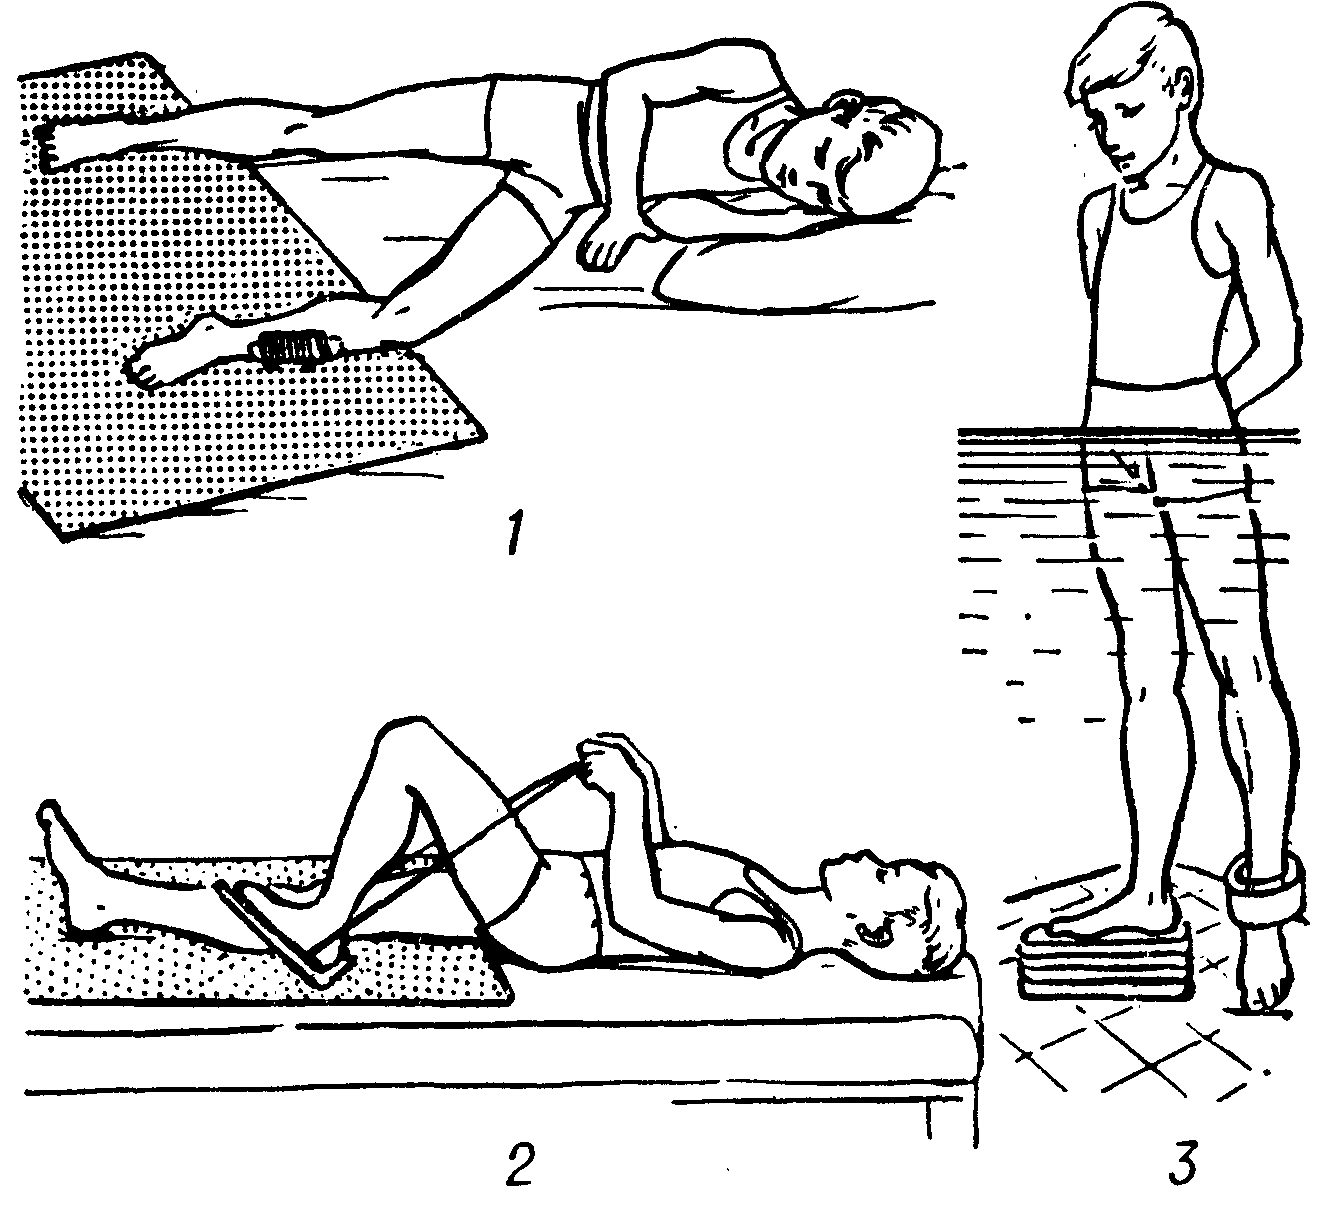 Упражнения для укрепления коленного сустава и связок